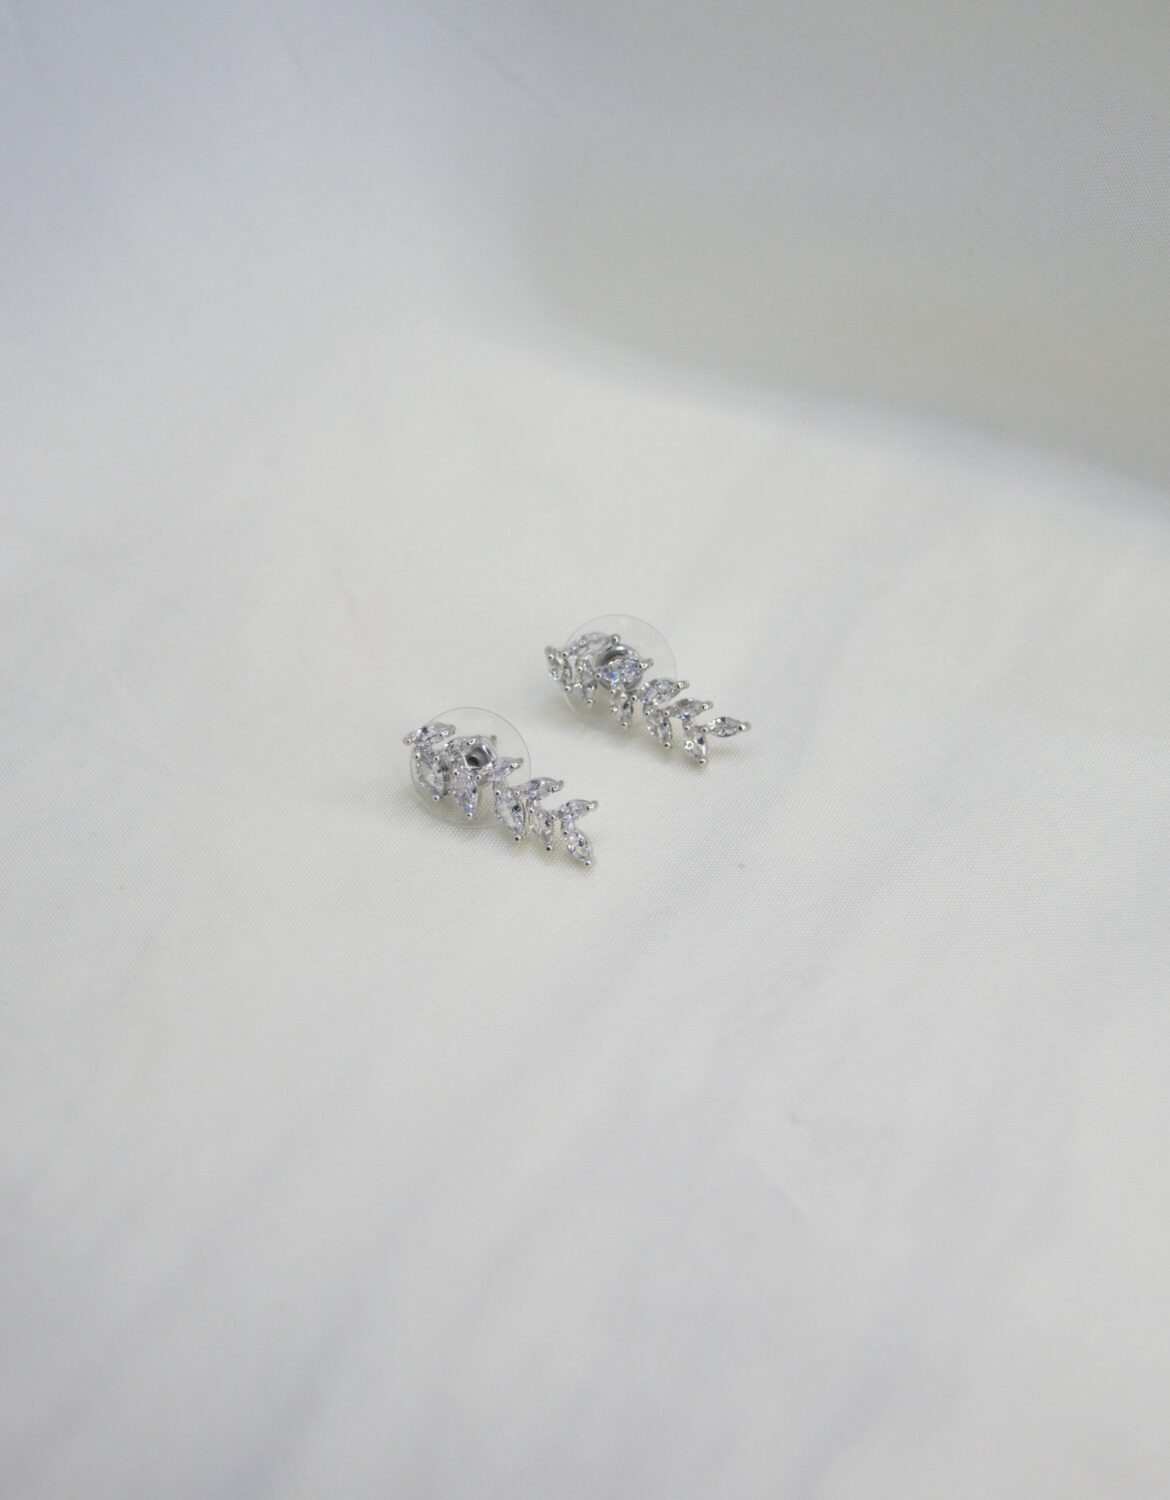 Small Flower Zircon Earrings-silver